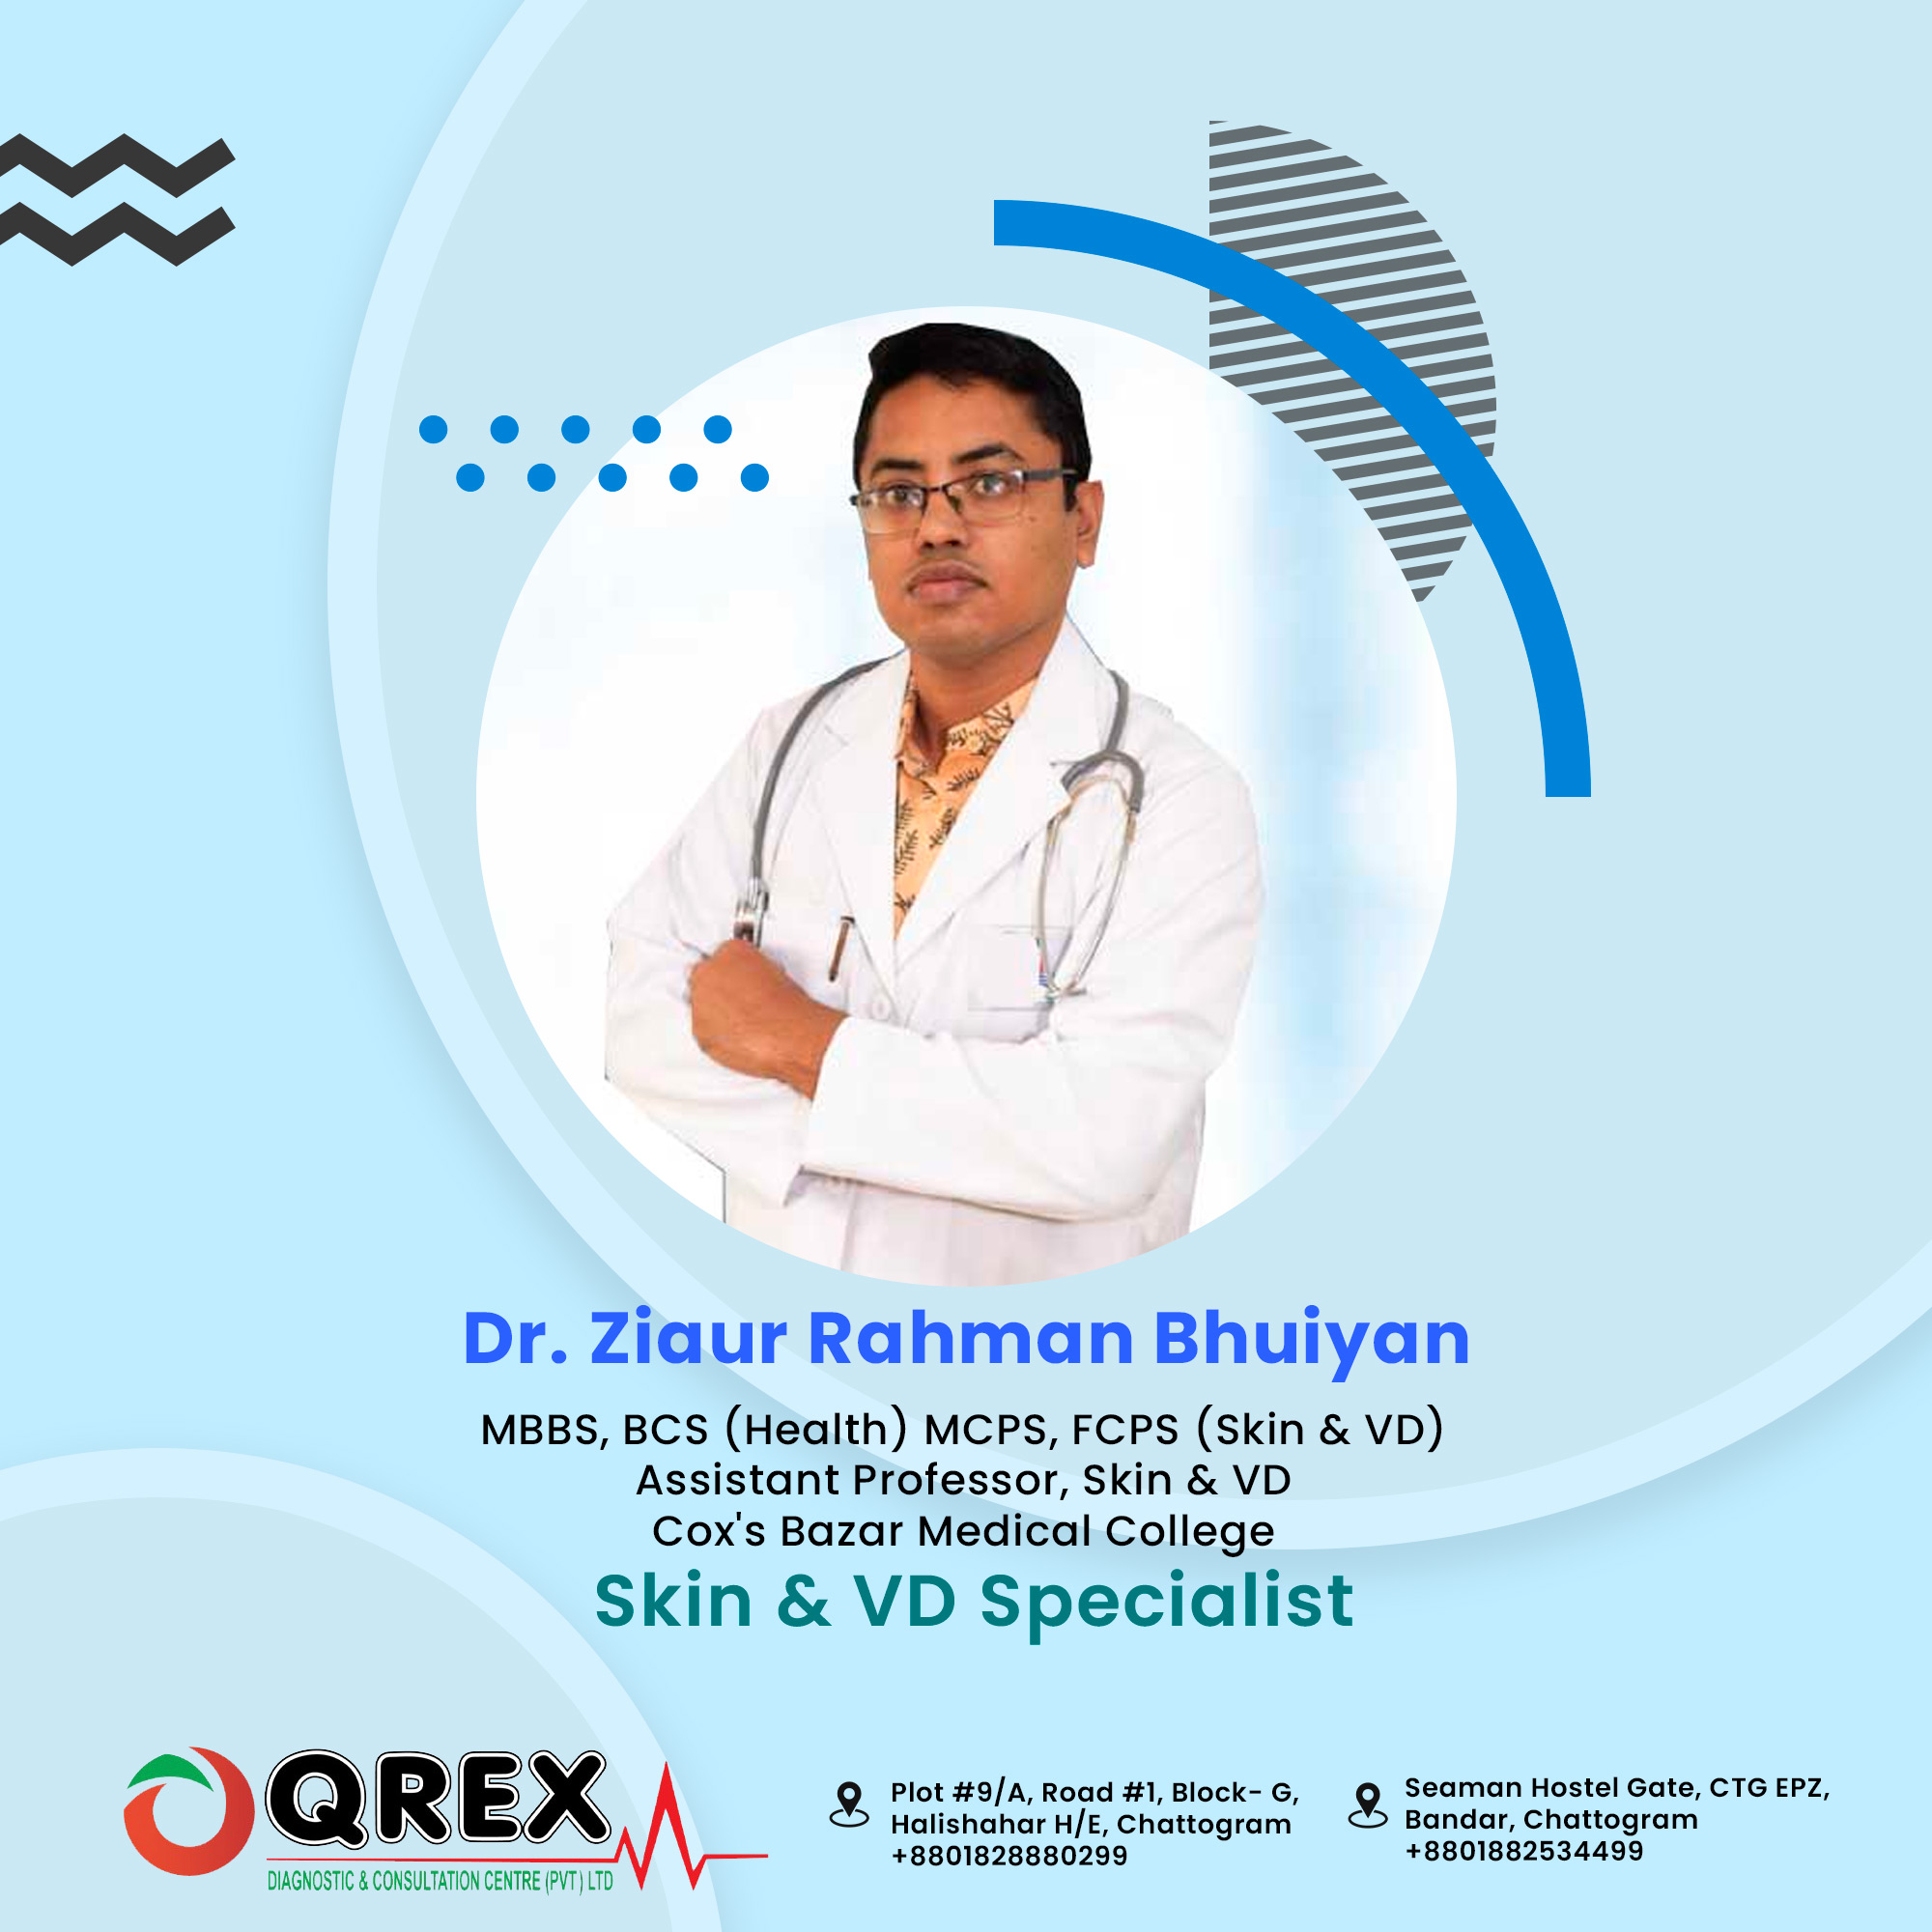 Dr. Ziaur Rahman Bhuiyan